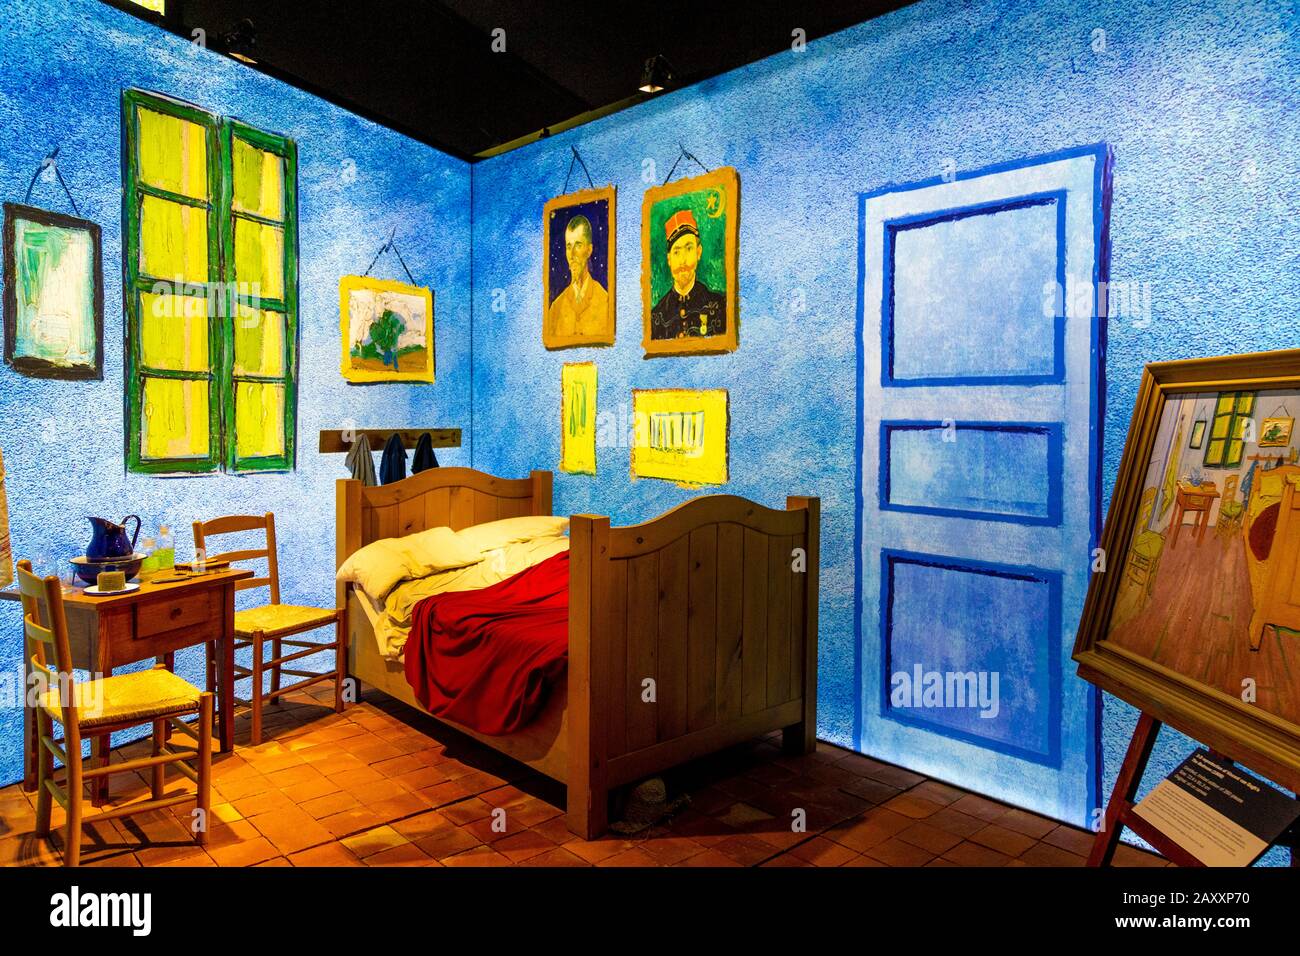 Recreation of Van Gogh's 'Bedroom in Arles' at digital immersive Meet Vincent van Gogh Experience 2020, London, UK Stock Photo